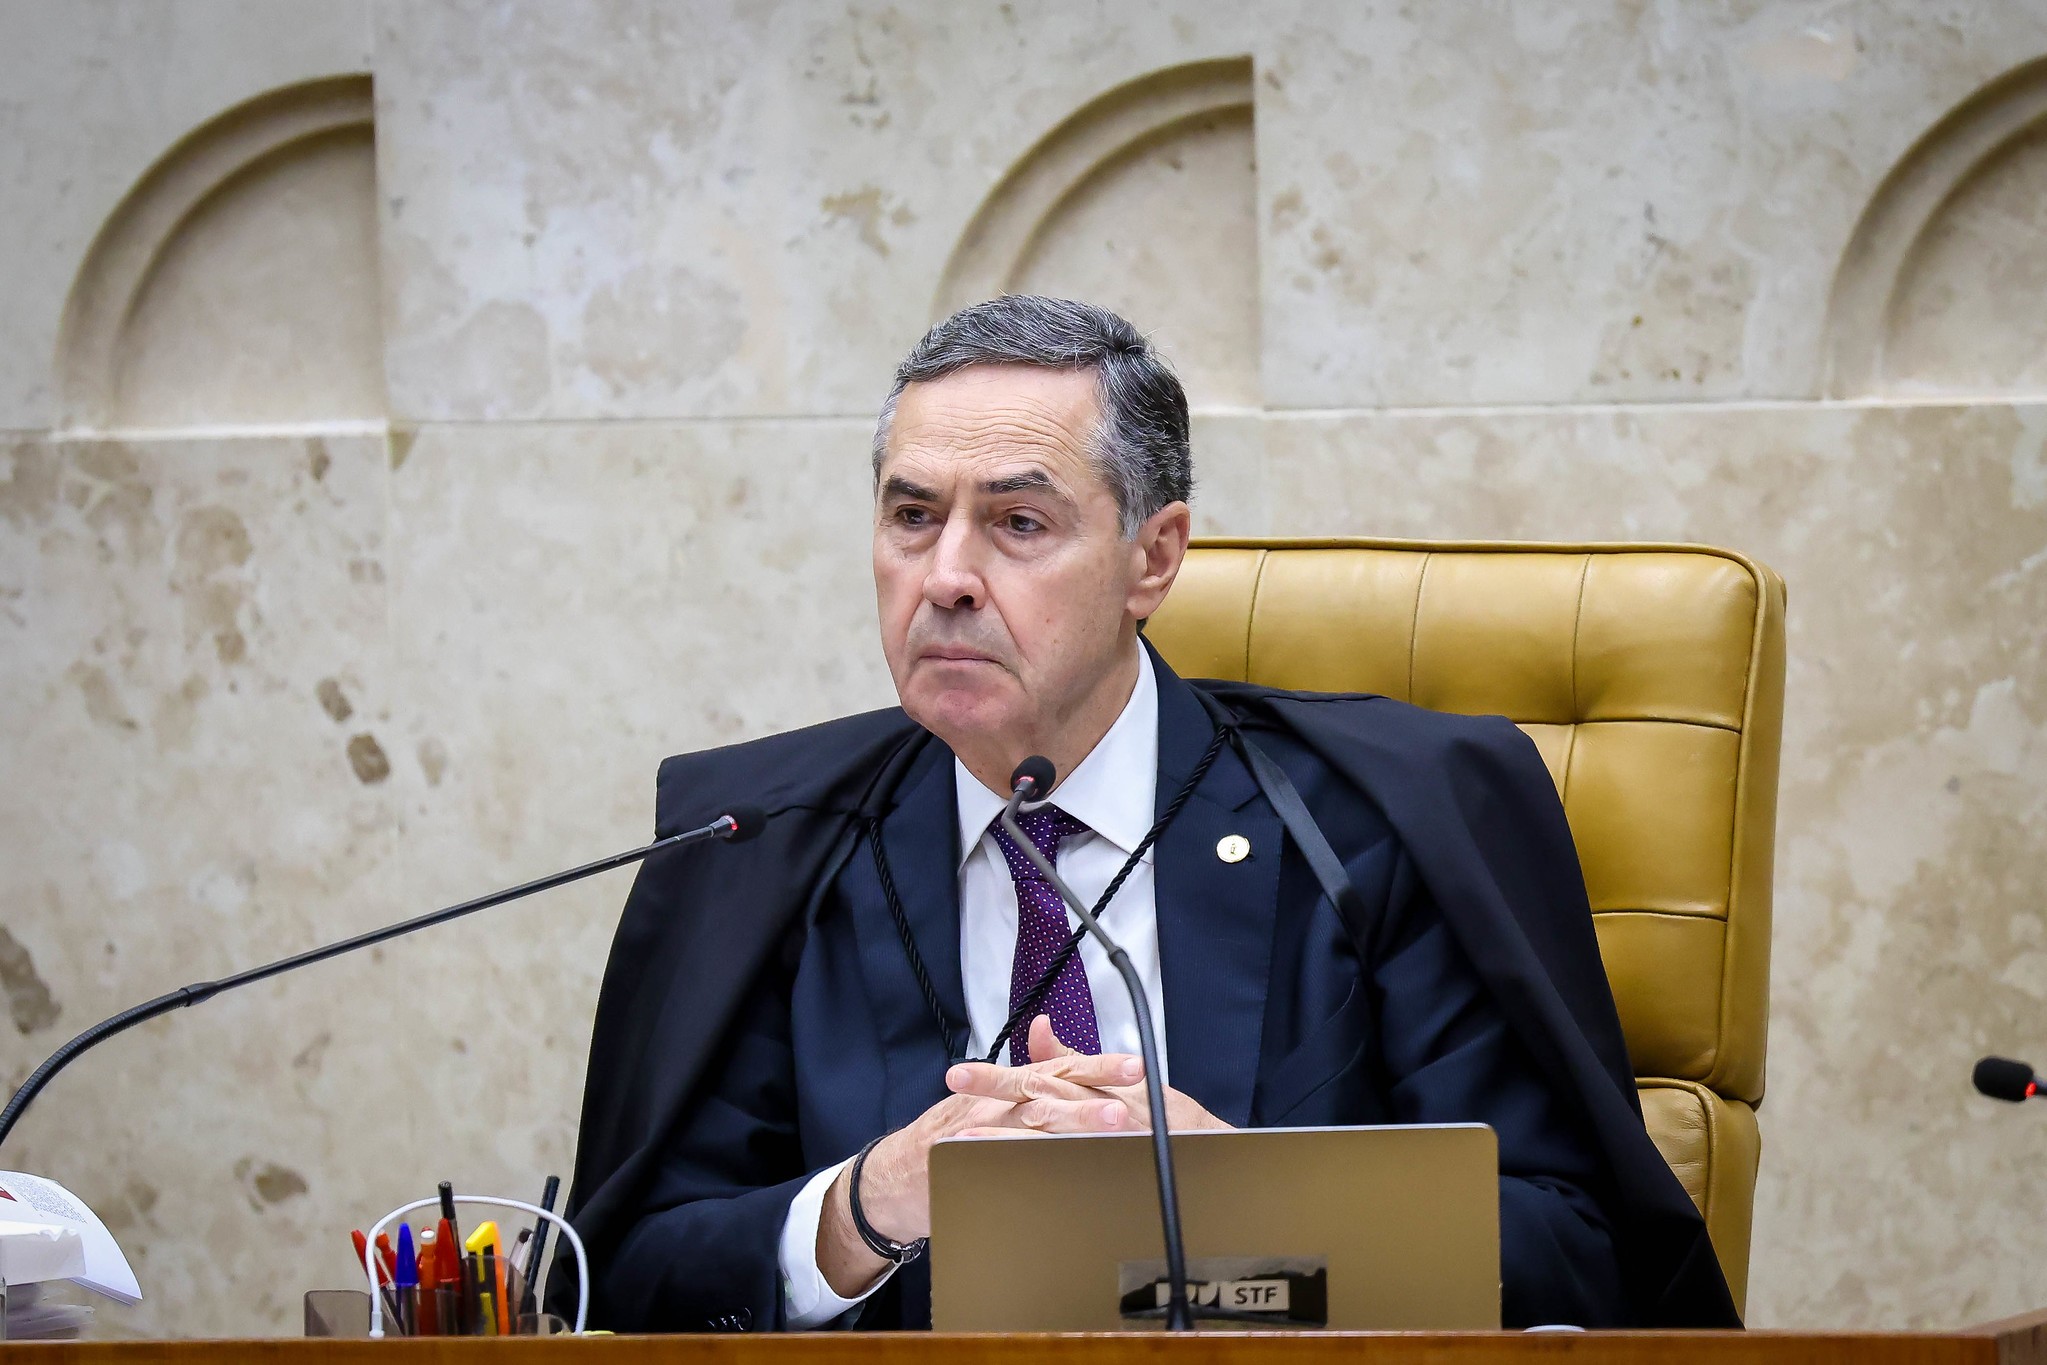 Justiça do RS deve voltar a funcionar 'regularmente' a partir de 1° de junho, diz Barroso